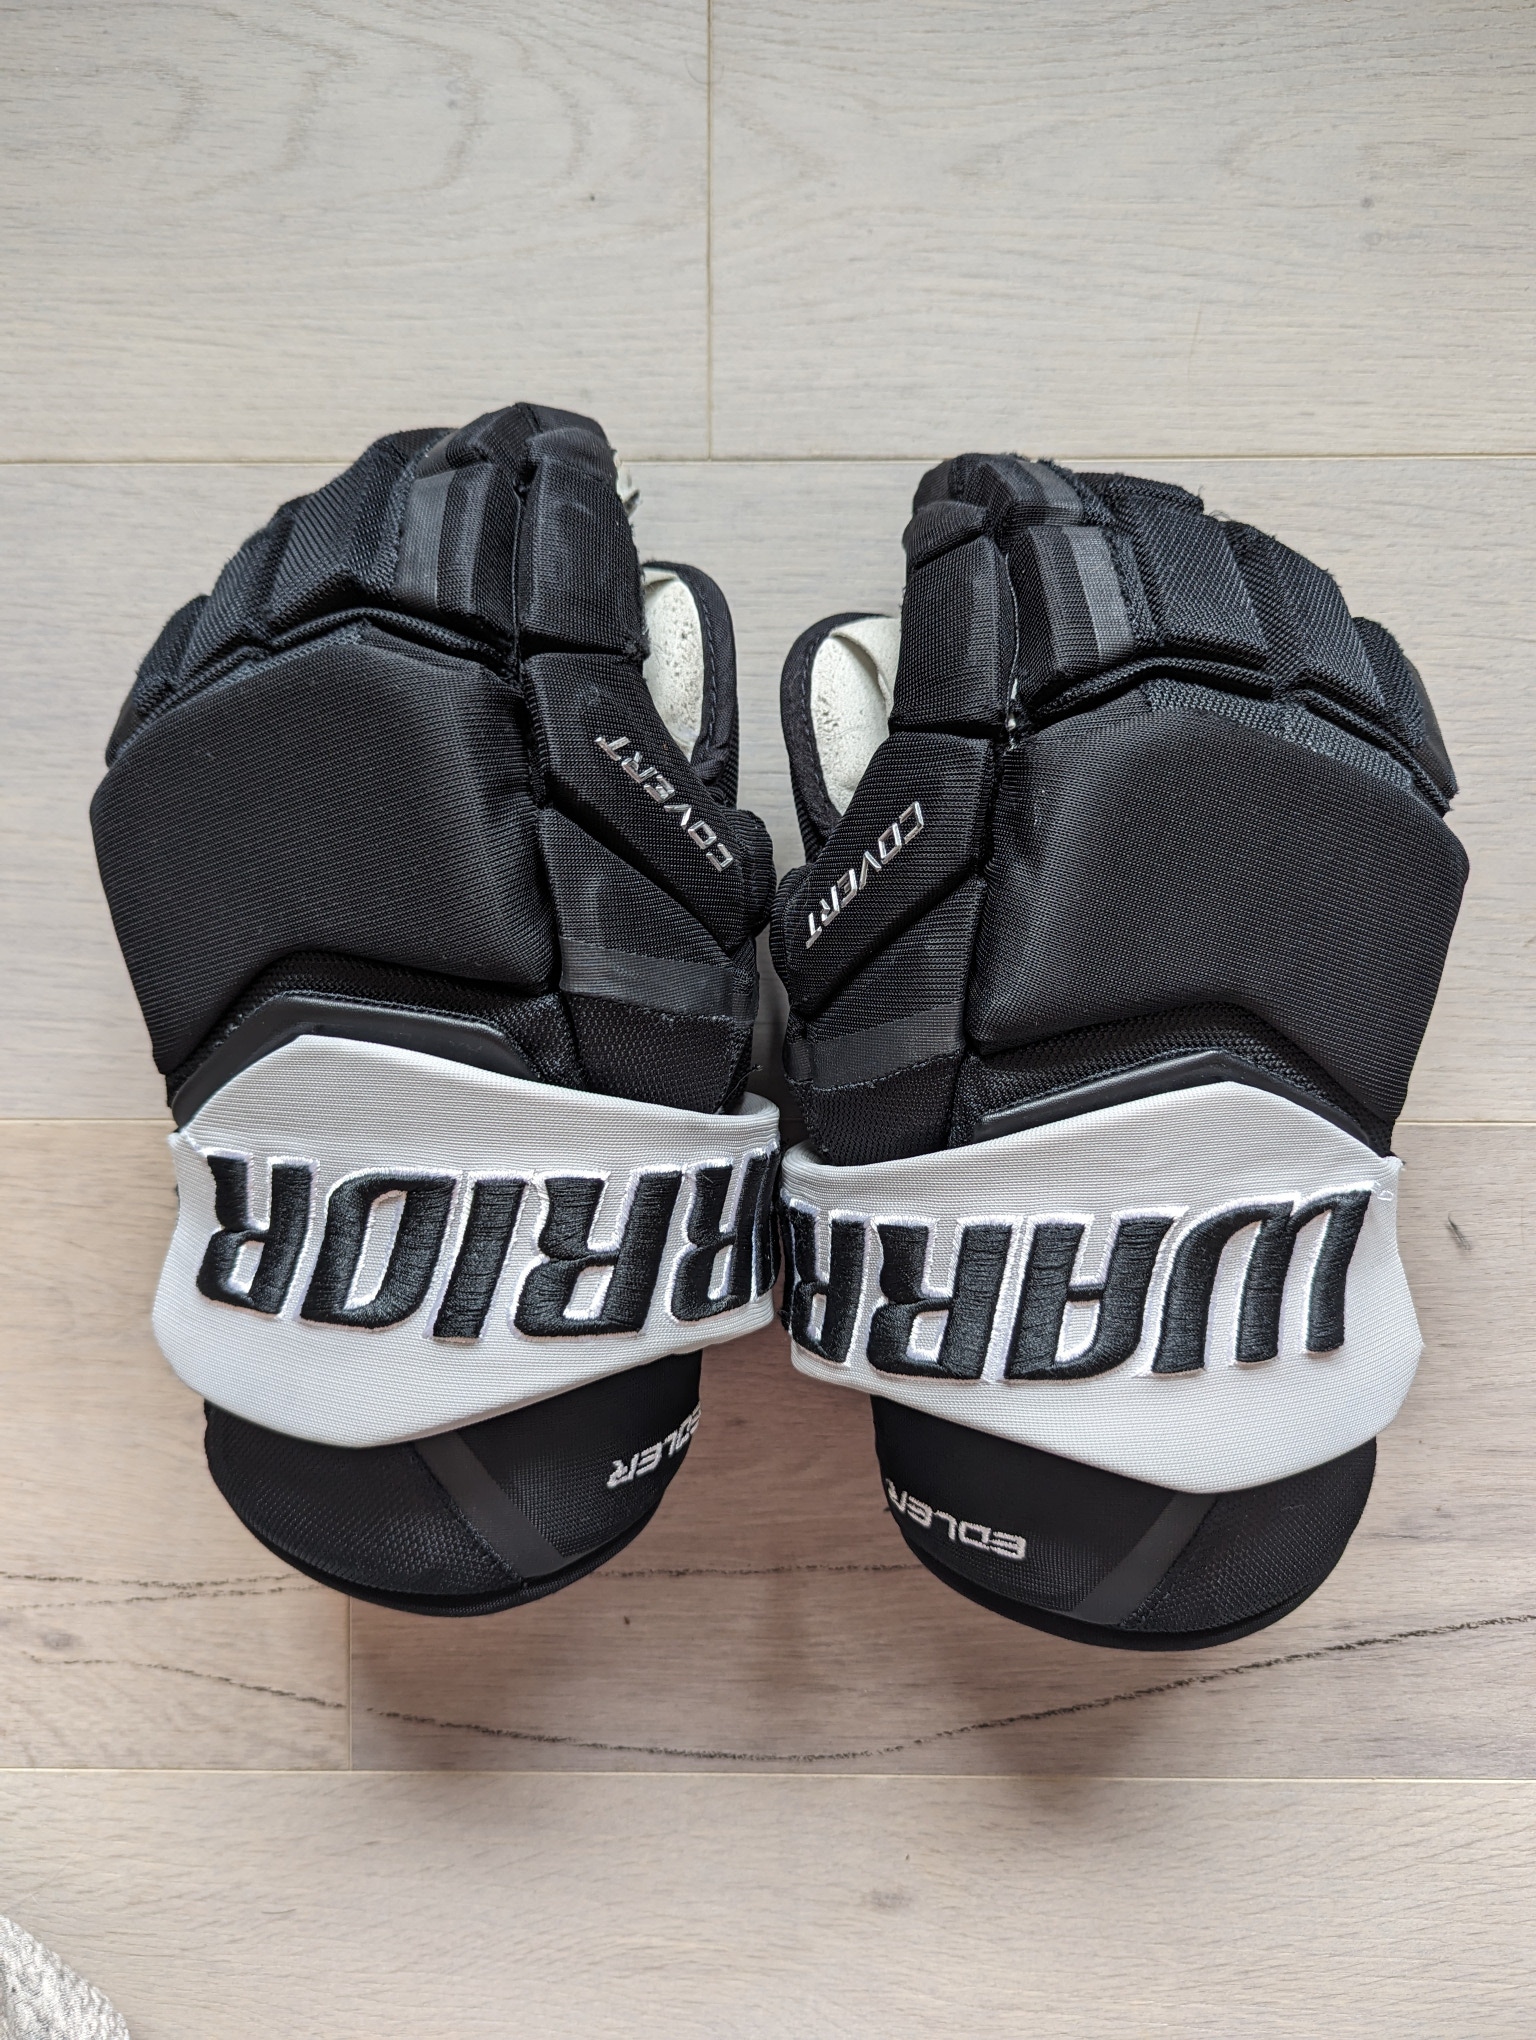 LA Kings - Warrior Covert QRE Gloves 14" Pro Stock